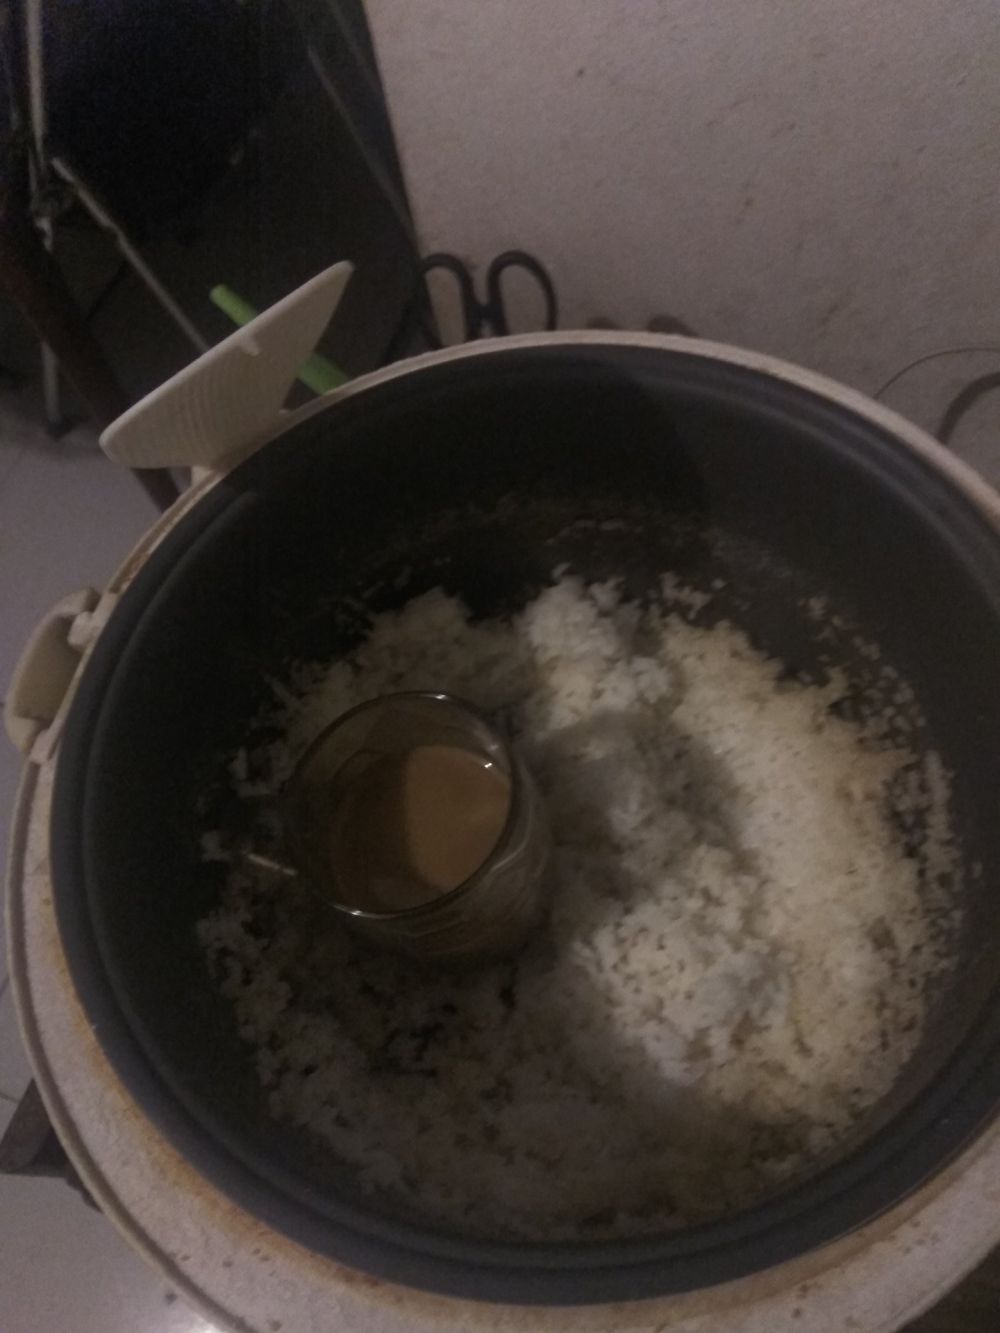 Nggak buat masak nasi, 11 pemakaian rice cooker ini nyeleneh abis